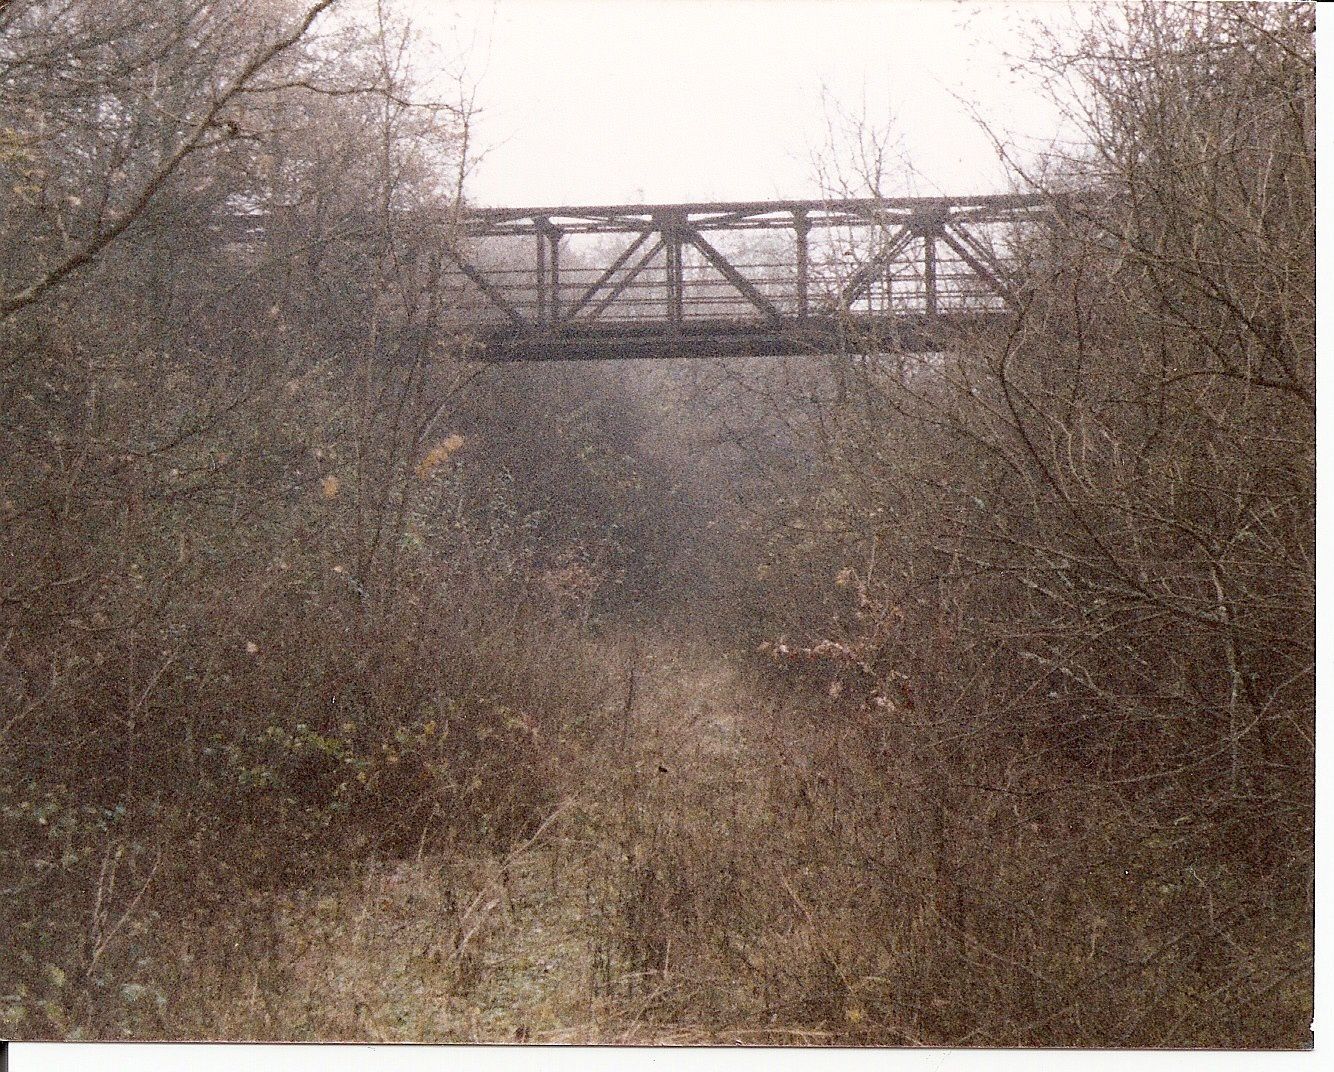 Image du Pont 7 en 1983 .. une première visite de la Ligne de chemin de fer ... en friche !!